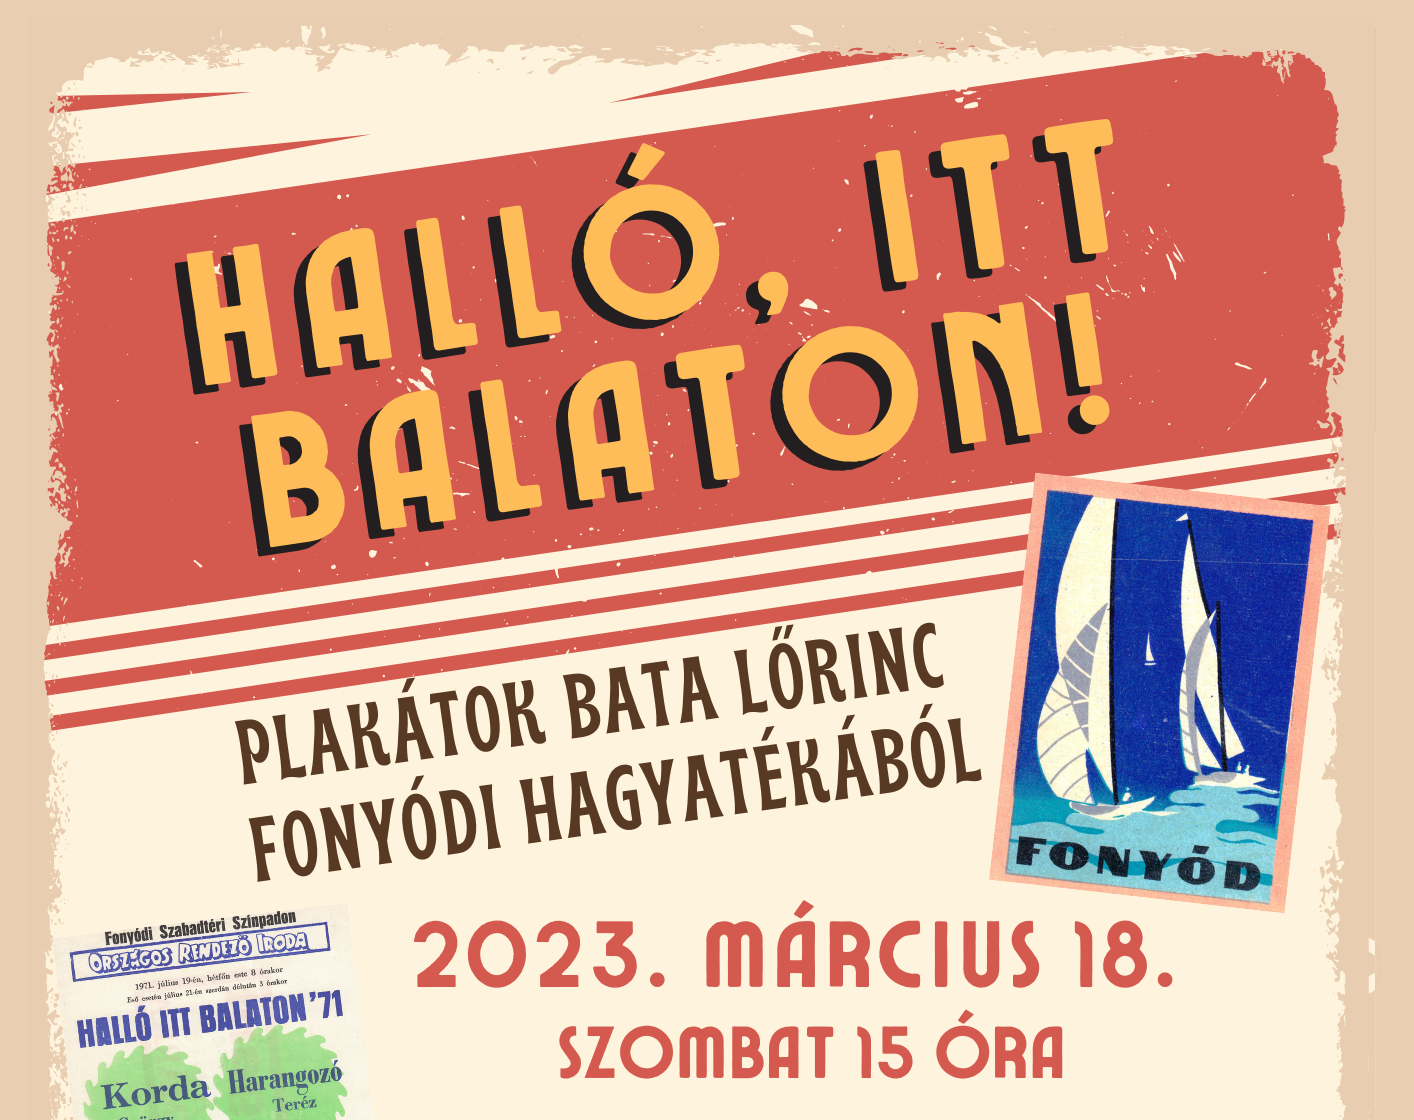 Halló, itt Balaton! – Plakátok Bata Lőrinc fonyódi hagyatékából